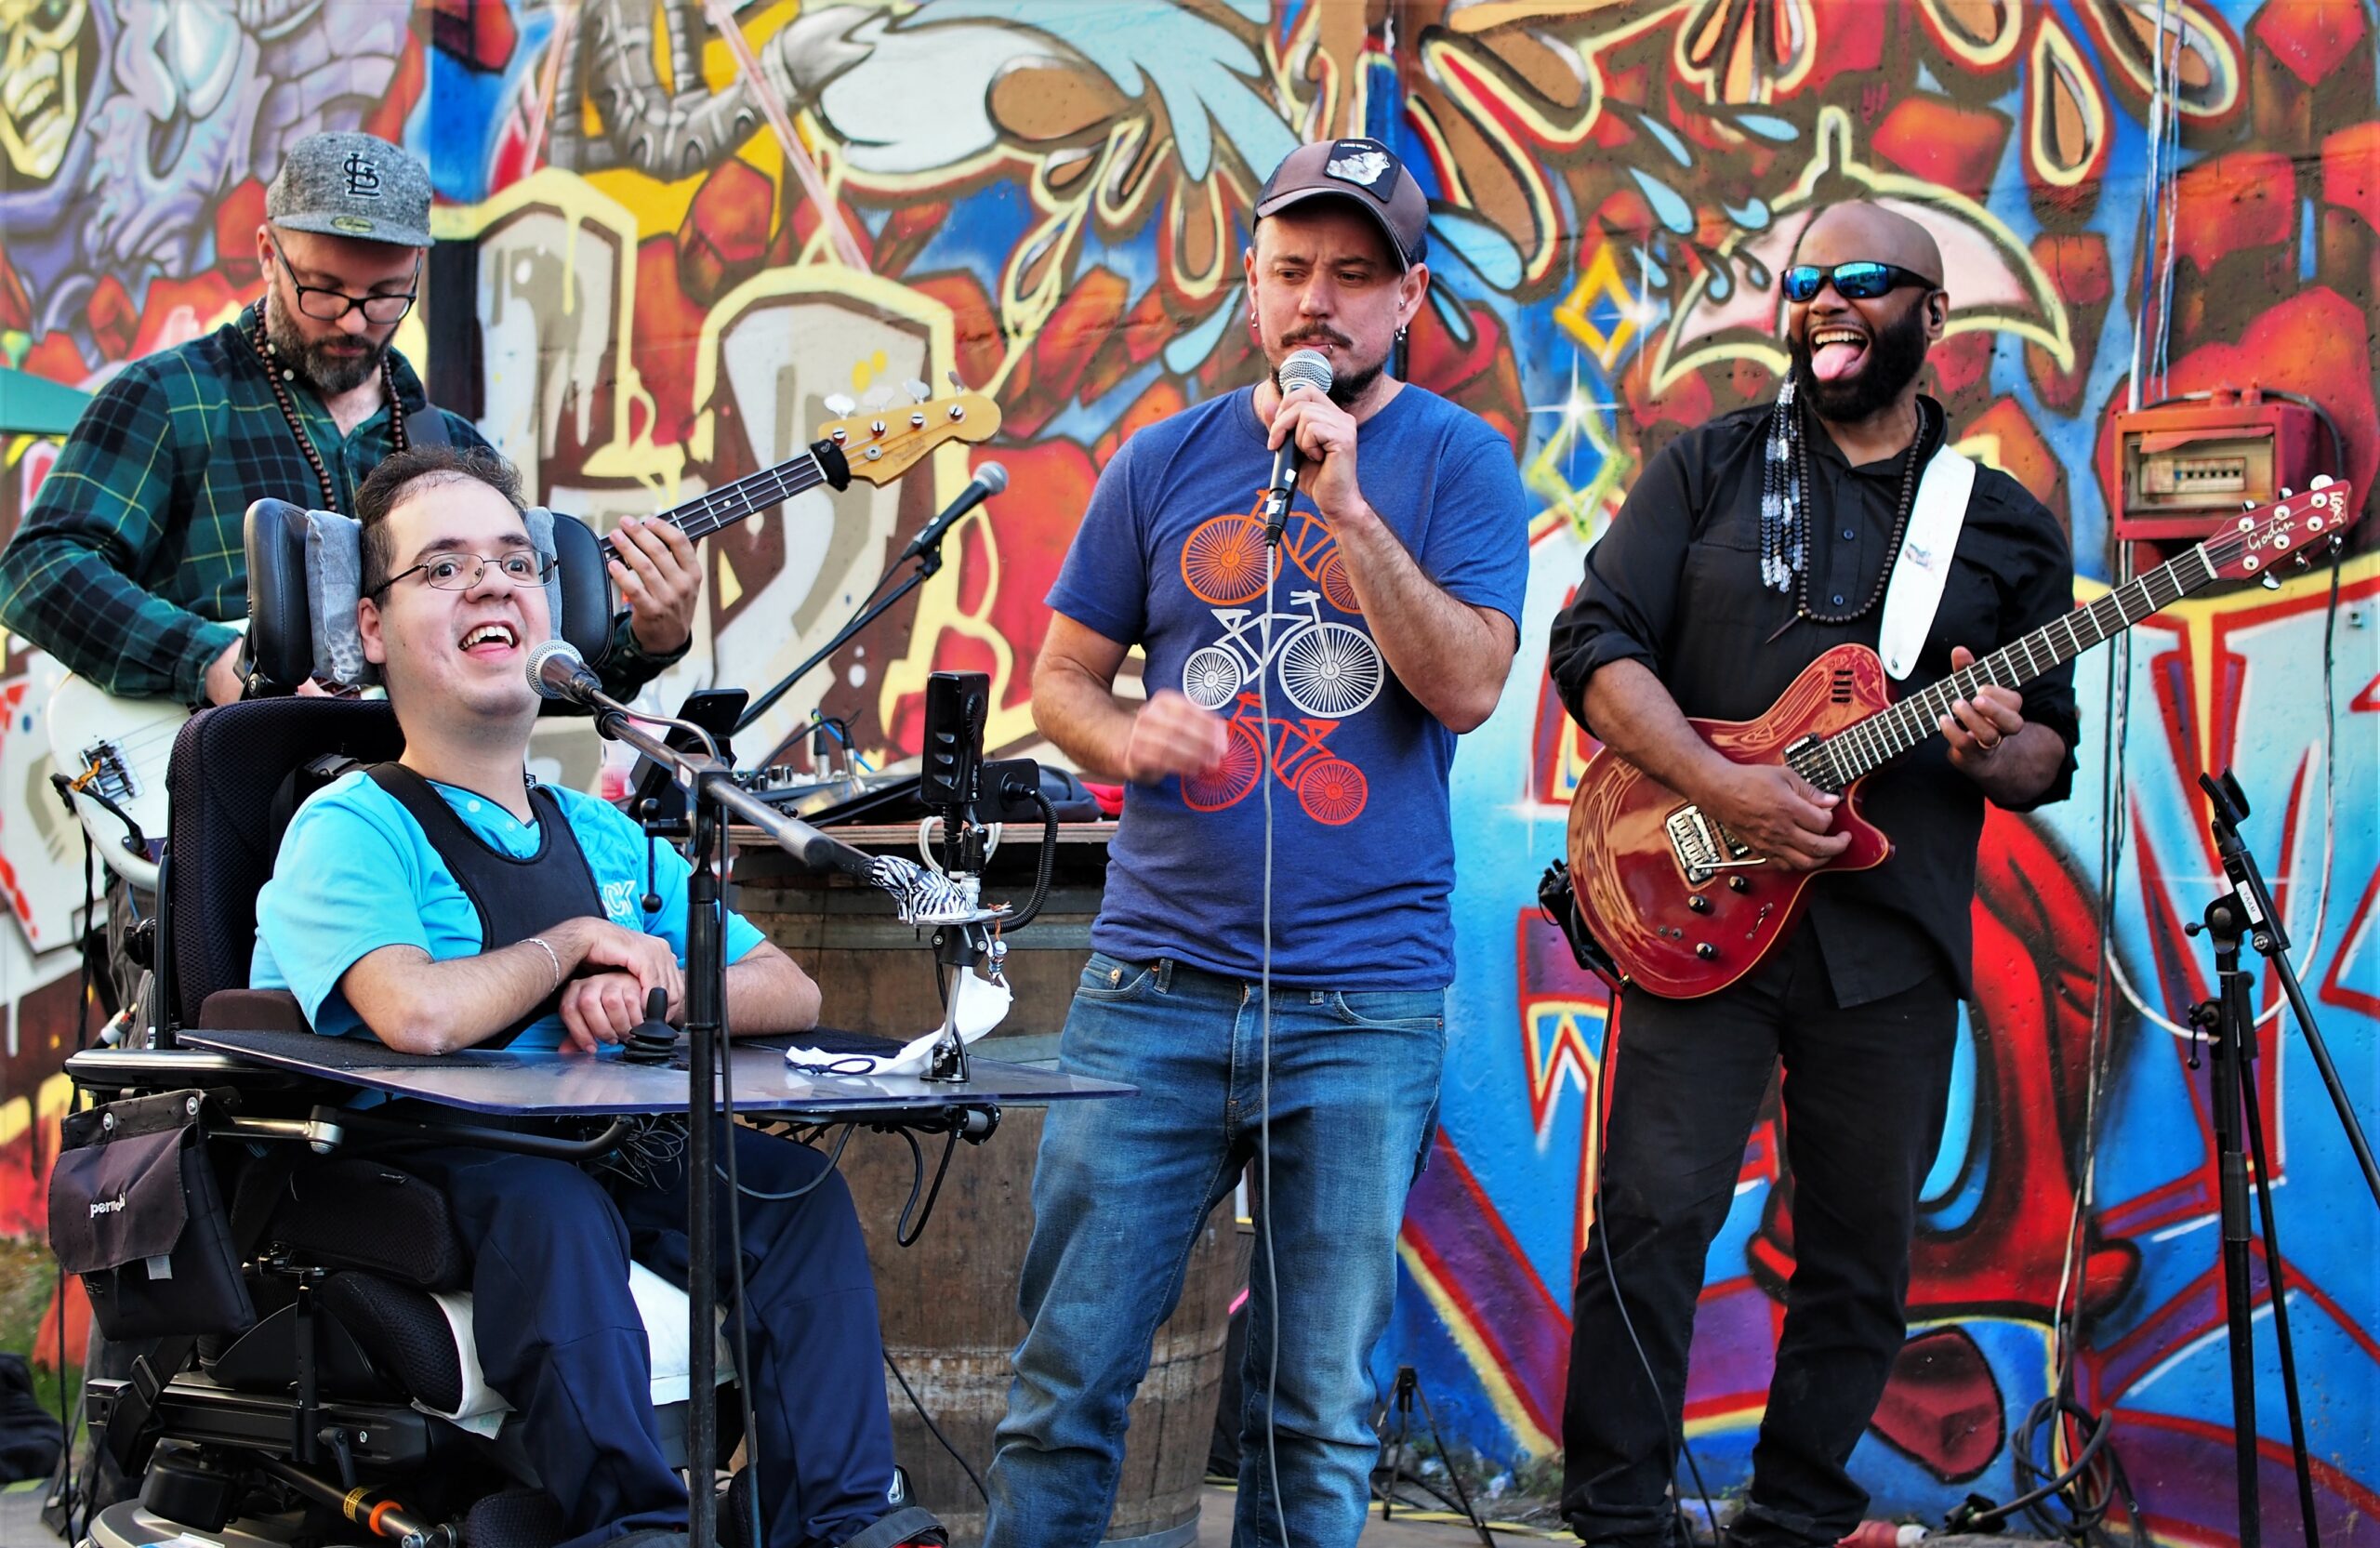 Ein Rapper im Rollstuhl und einer stehend, daneben zwei Musiker und im Hintergrund eine Grafiti-Wand